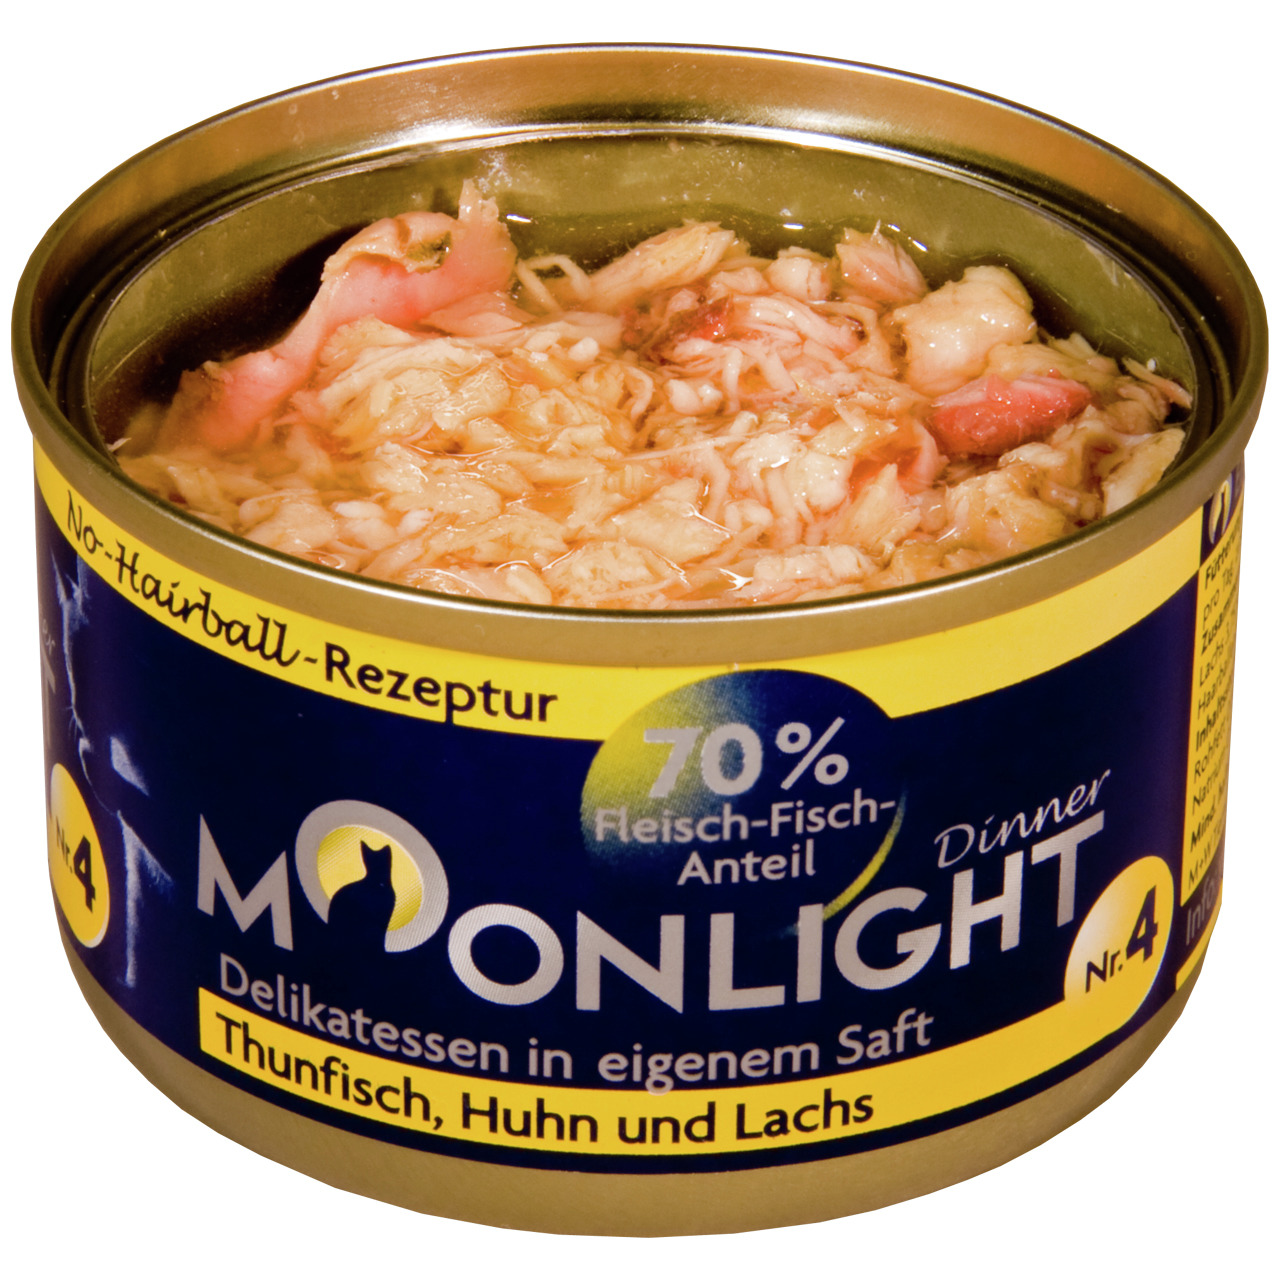 Sparpaket 24 x 80 g Moonlight Dinner Nr. 4 Thunfisch, Huhn und Lachs in eigenem Saft Katzen Nassfutter